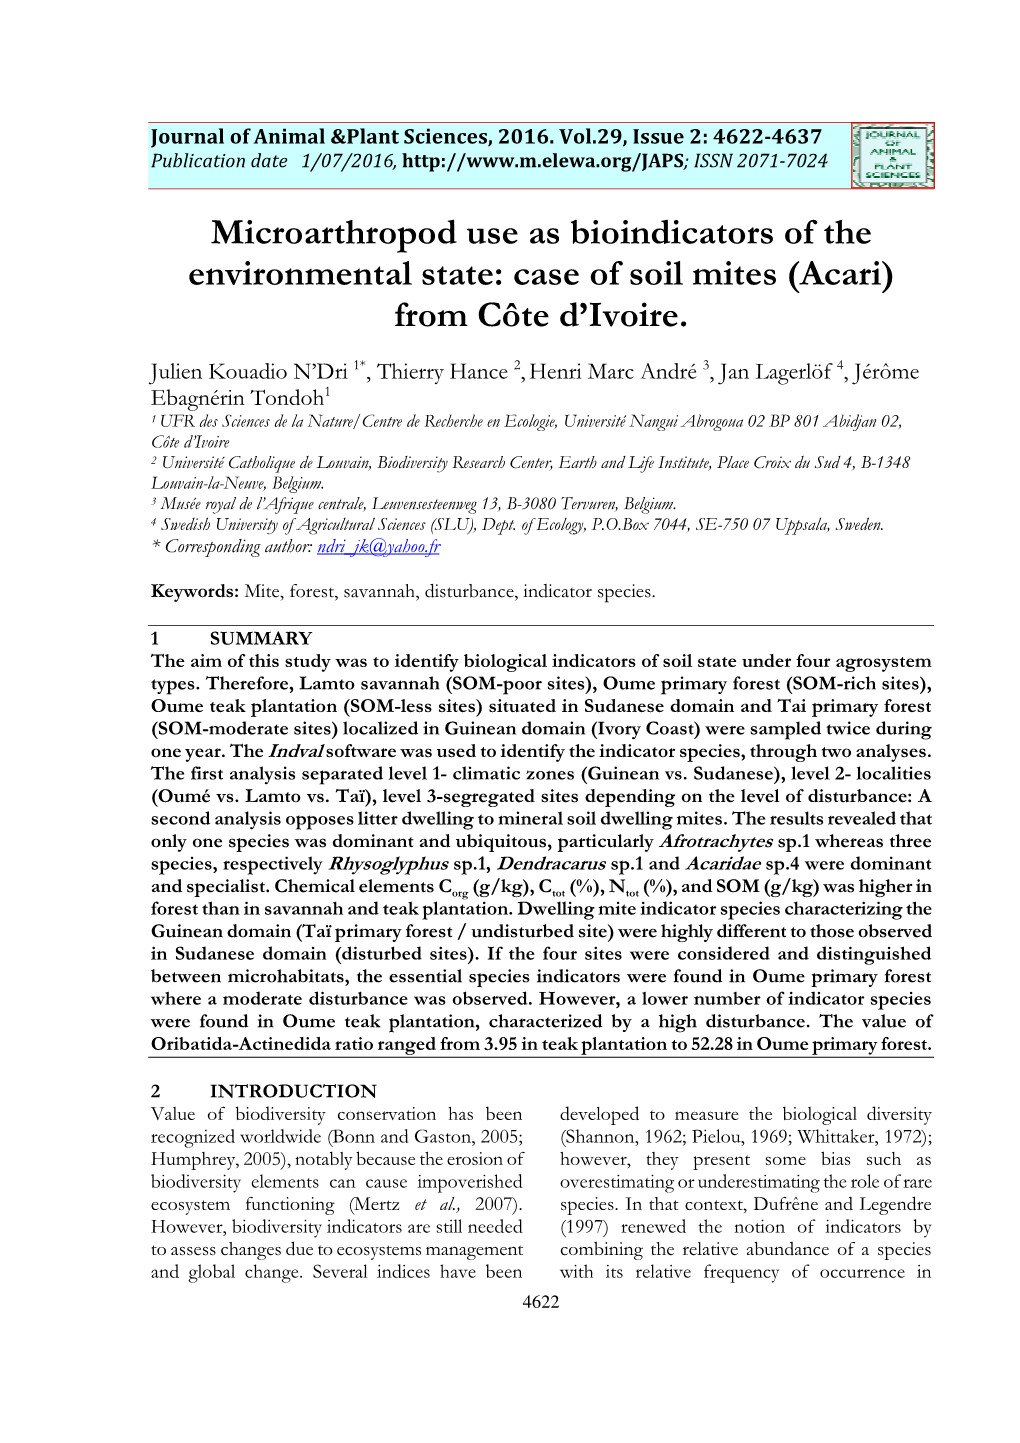 Case of Soil Mites (Acari) from Côte D’Ivoire